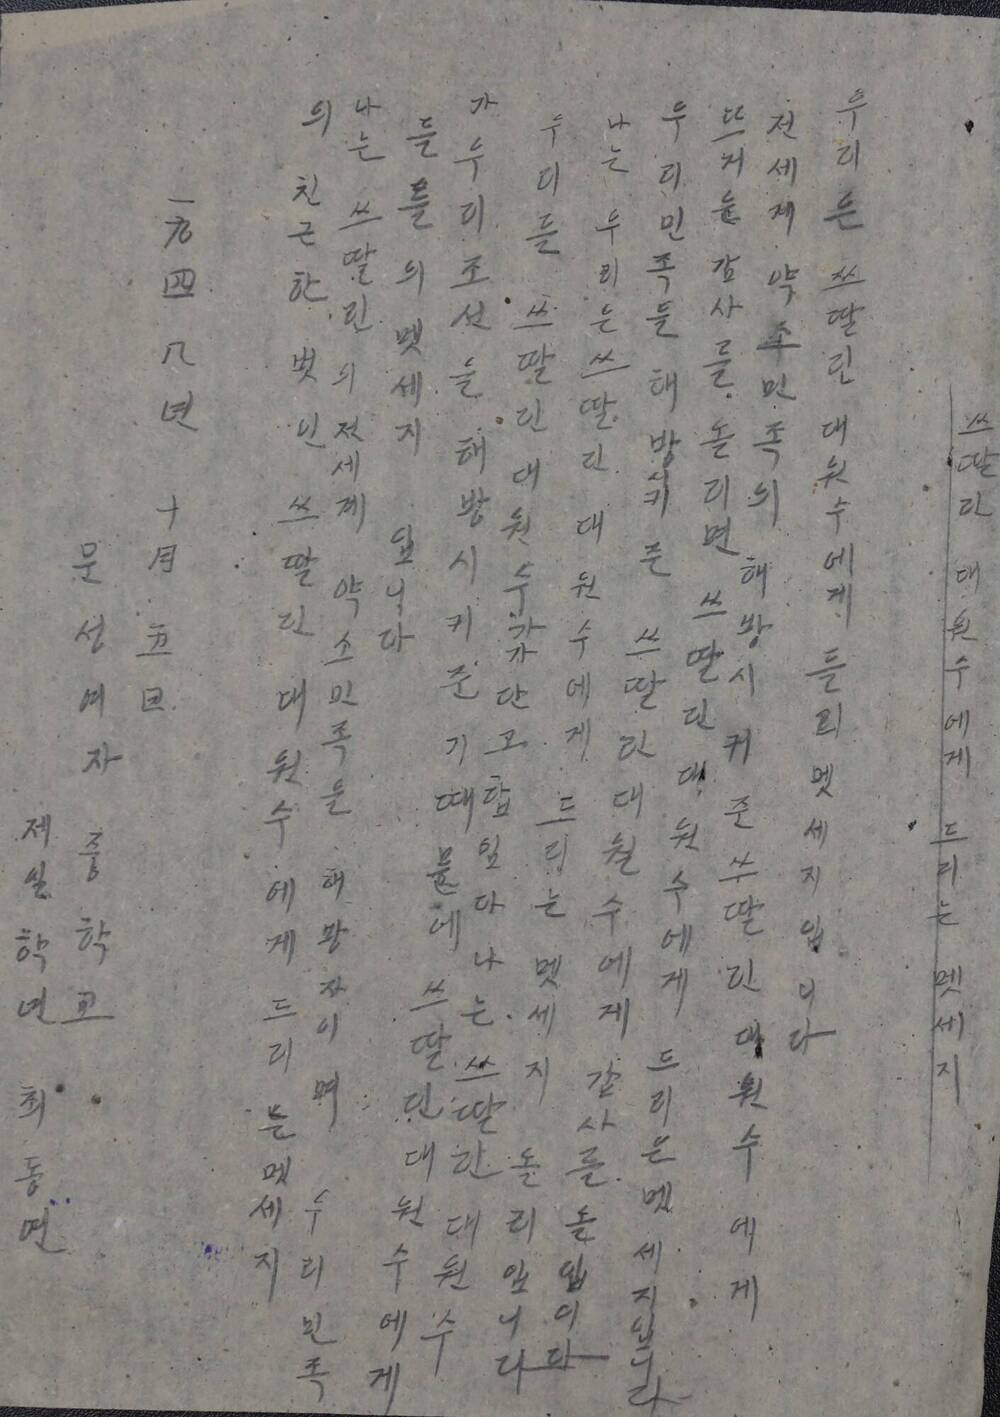 Письмо И.В. Сталину и командованию Советской армии в связи с эвакуацией Советской армии из пределов Северной Кореи с выражением пламенной любви и благодарности.